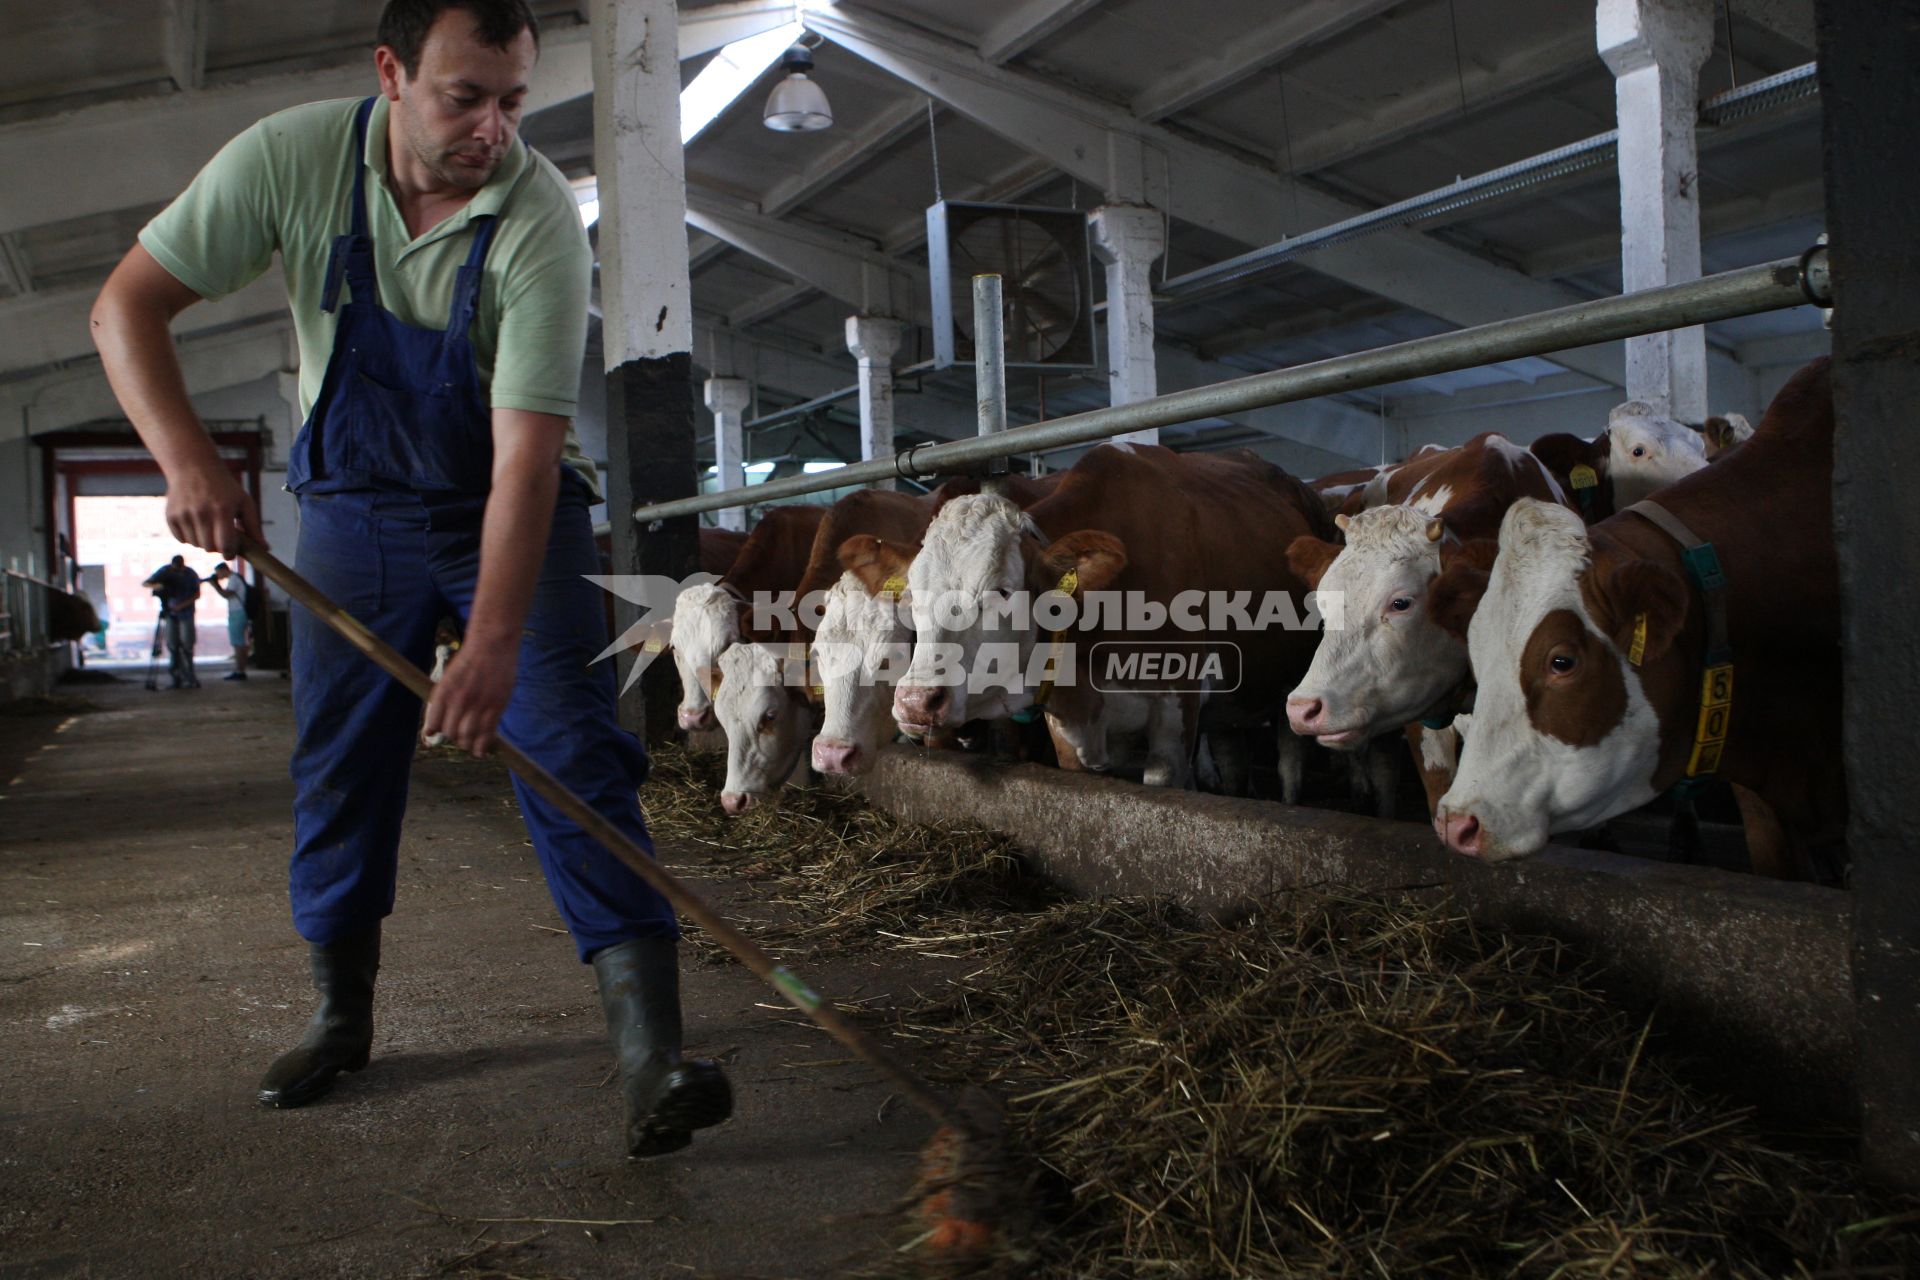 Калининградская область. Частное сельскохозяйственное предприятие. На снимке: фермер подкладывает сено коровам.